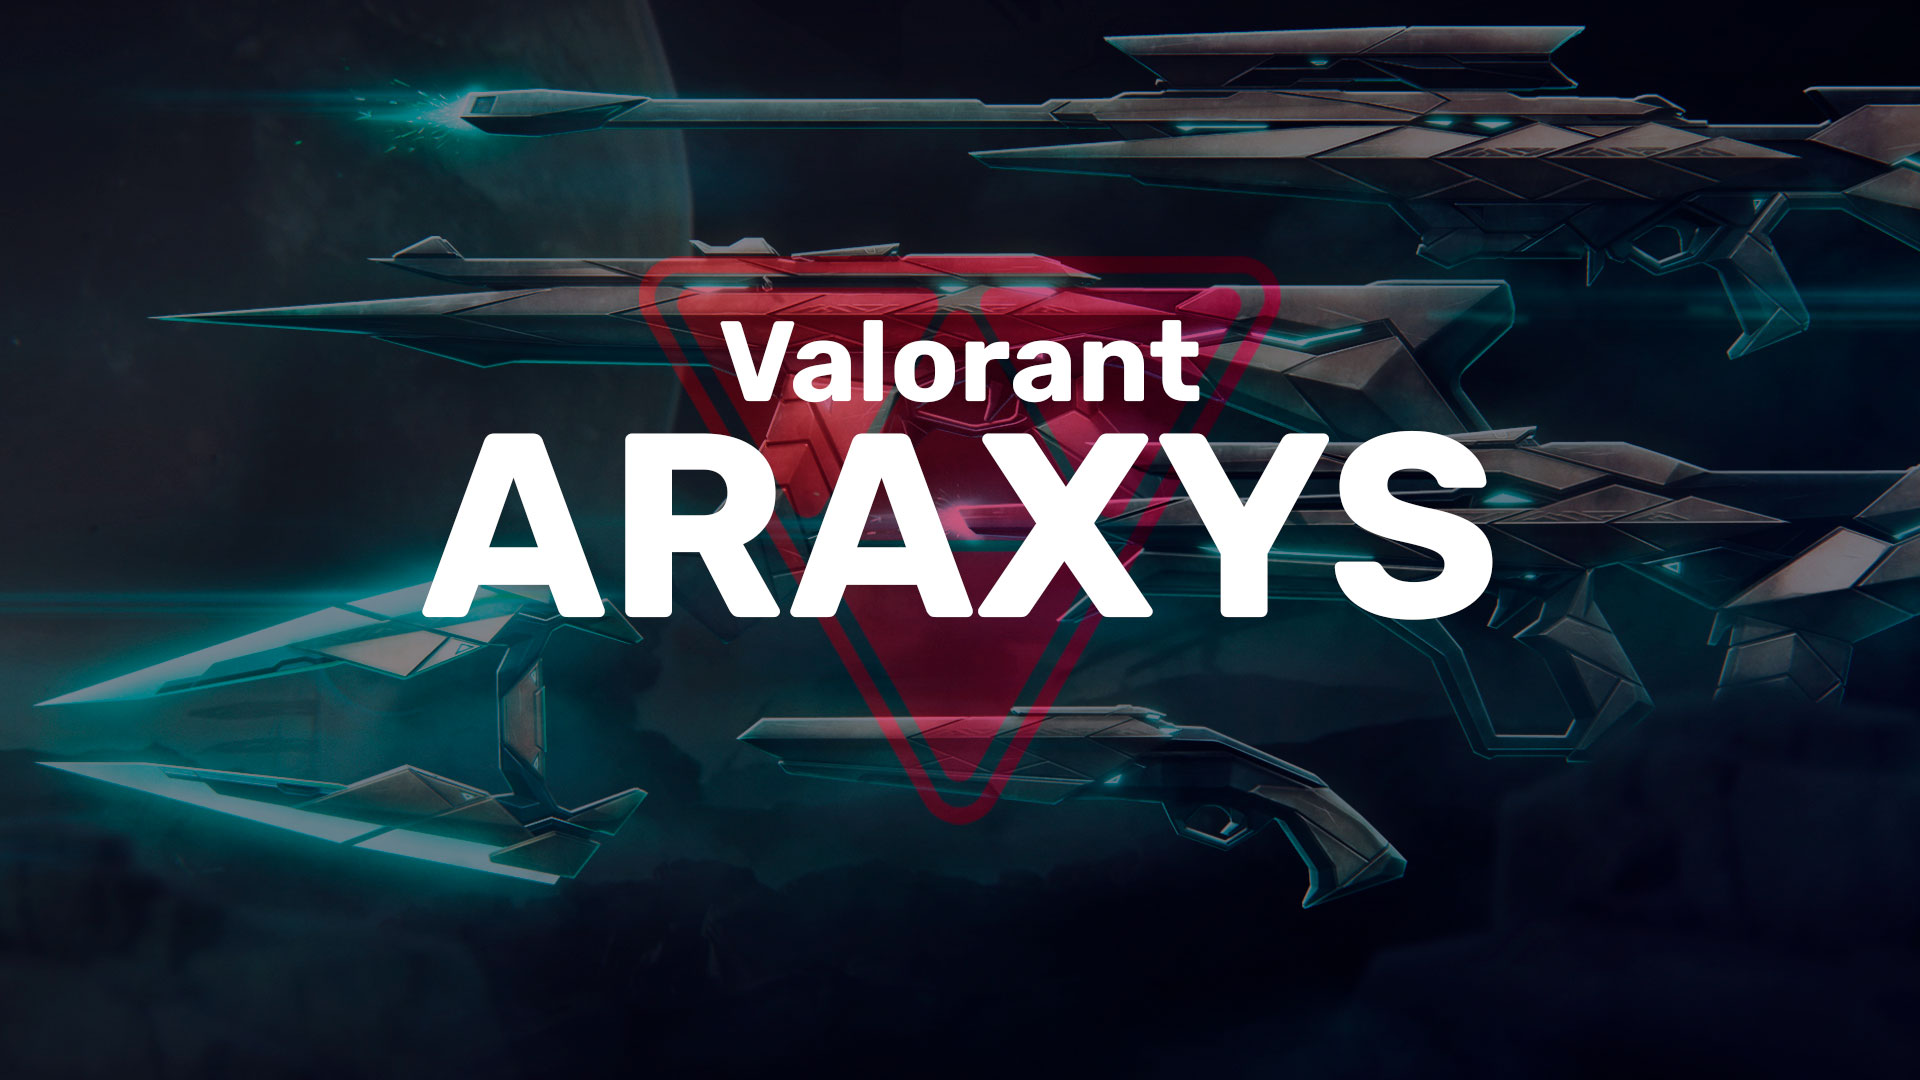 Вместе с выходом 6 эпизода в Valorant появилась коллекция скинов «Araxys» состоящая из 8 предметов с различными расцветками.